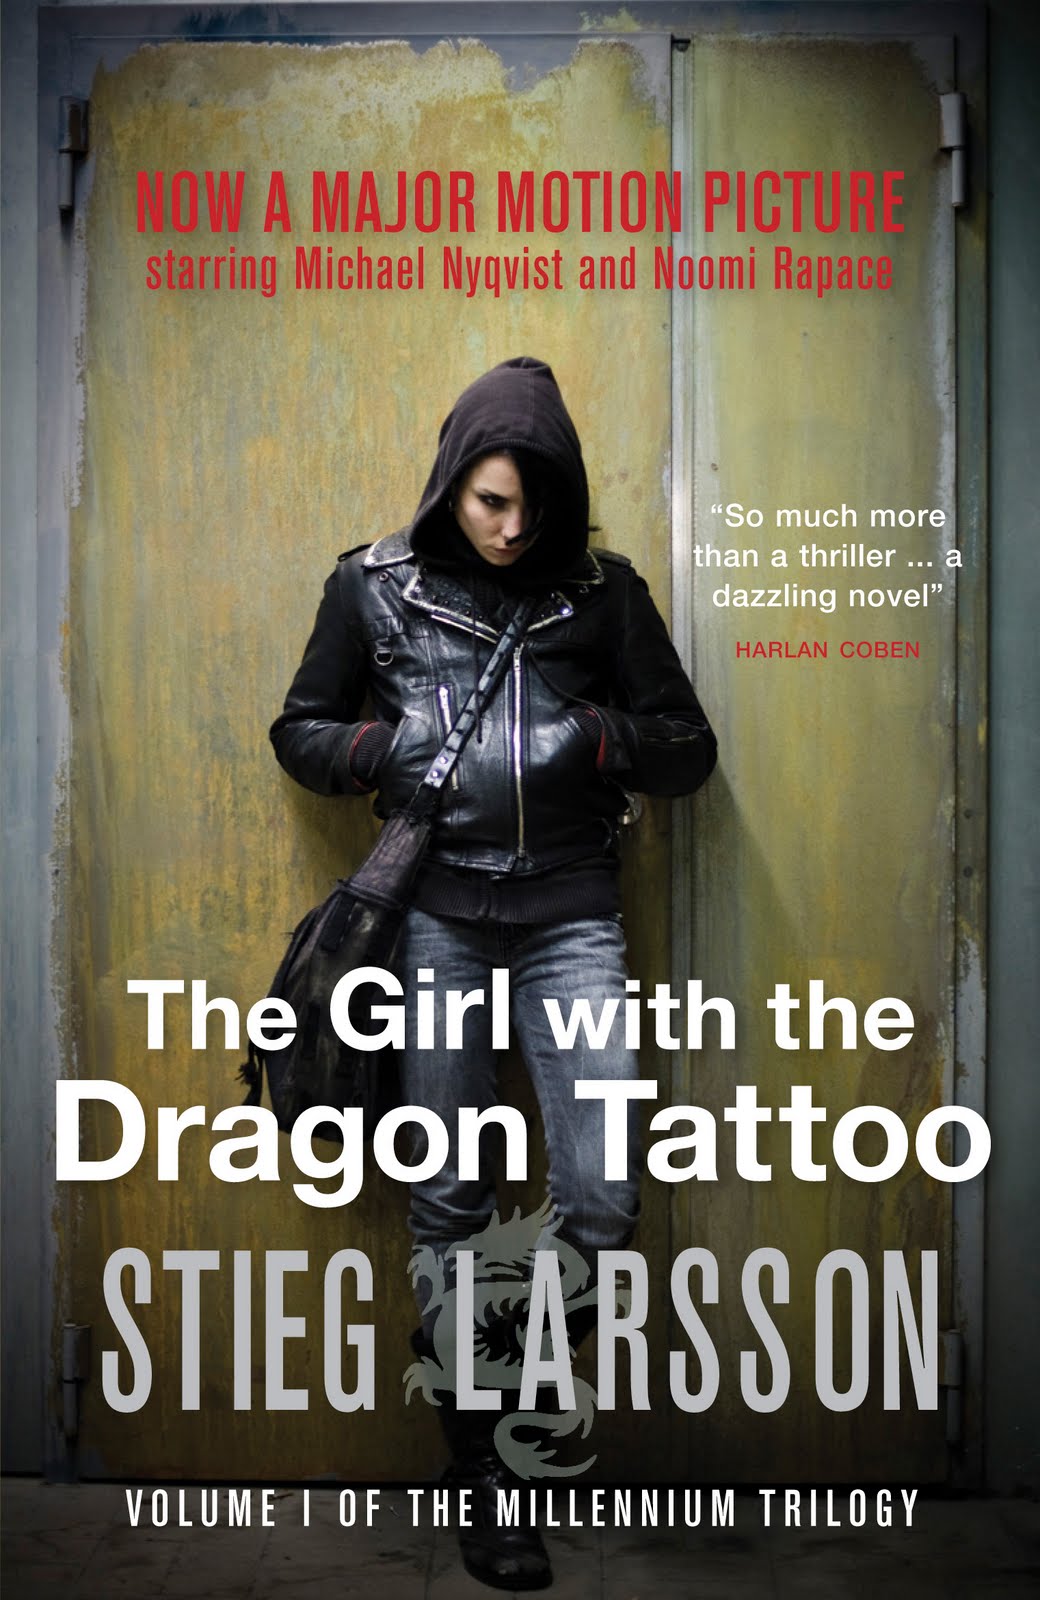 http://4.bp.blogspot.com/_X9UfDx9CiZc/TUUgY1Un2hI/AAAAAAAAAb0/F86FaAzhPjY/s1600/The+Girl+with+the+Dragon+Tattoo.jpg